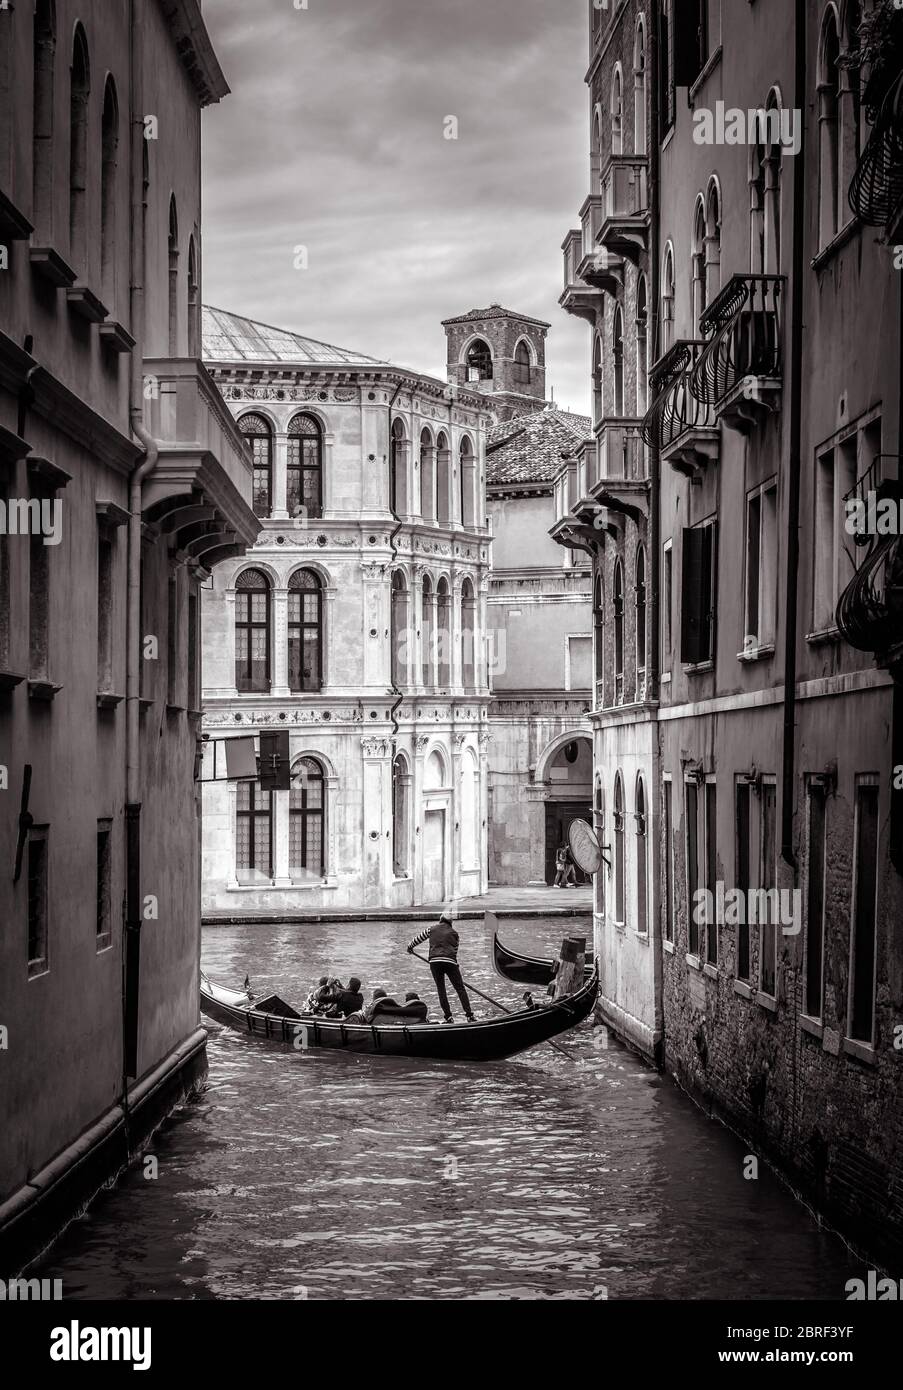 Venedig in schwarz-weiß, Italien. Alte schmale Straße mit einiger Gondel in der Ferne. Romantische Wassertour über die alten Kanäle Venedigs. Konzept der tr Stockfoto